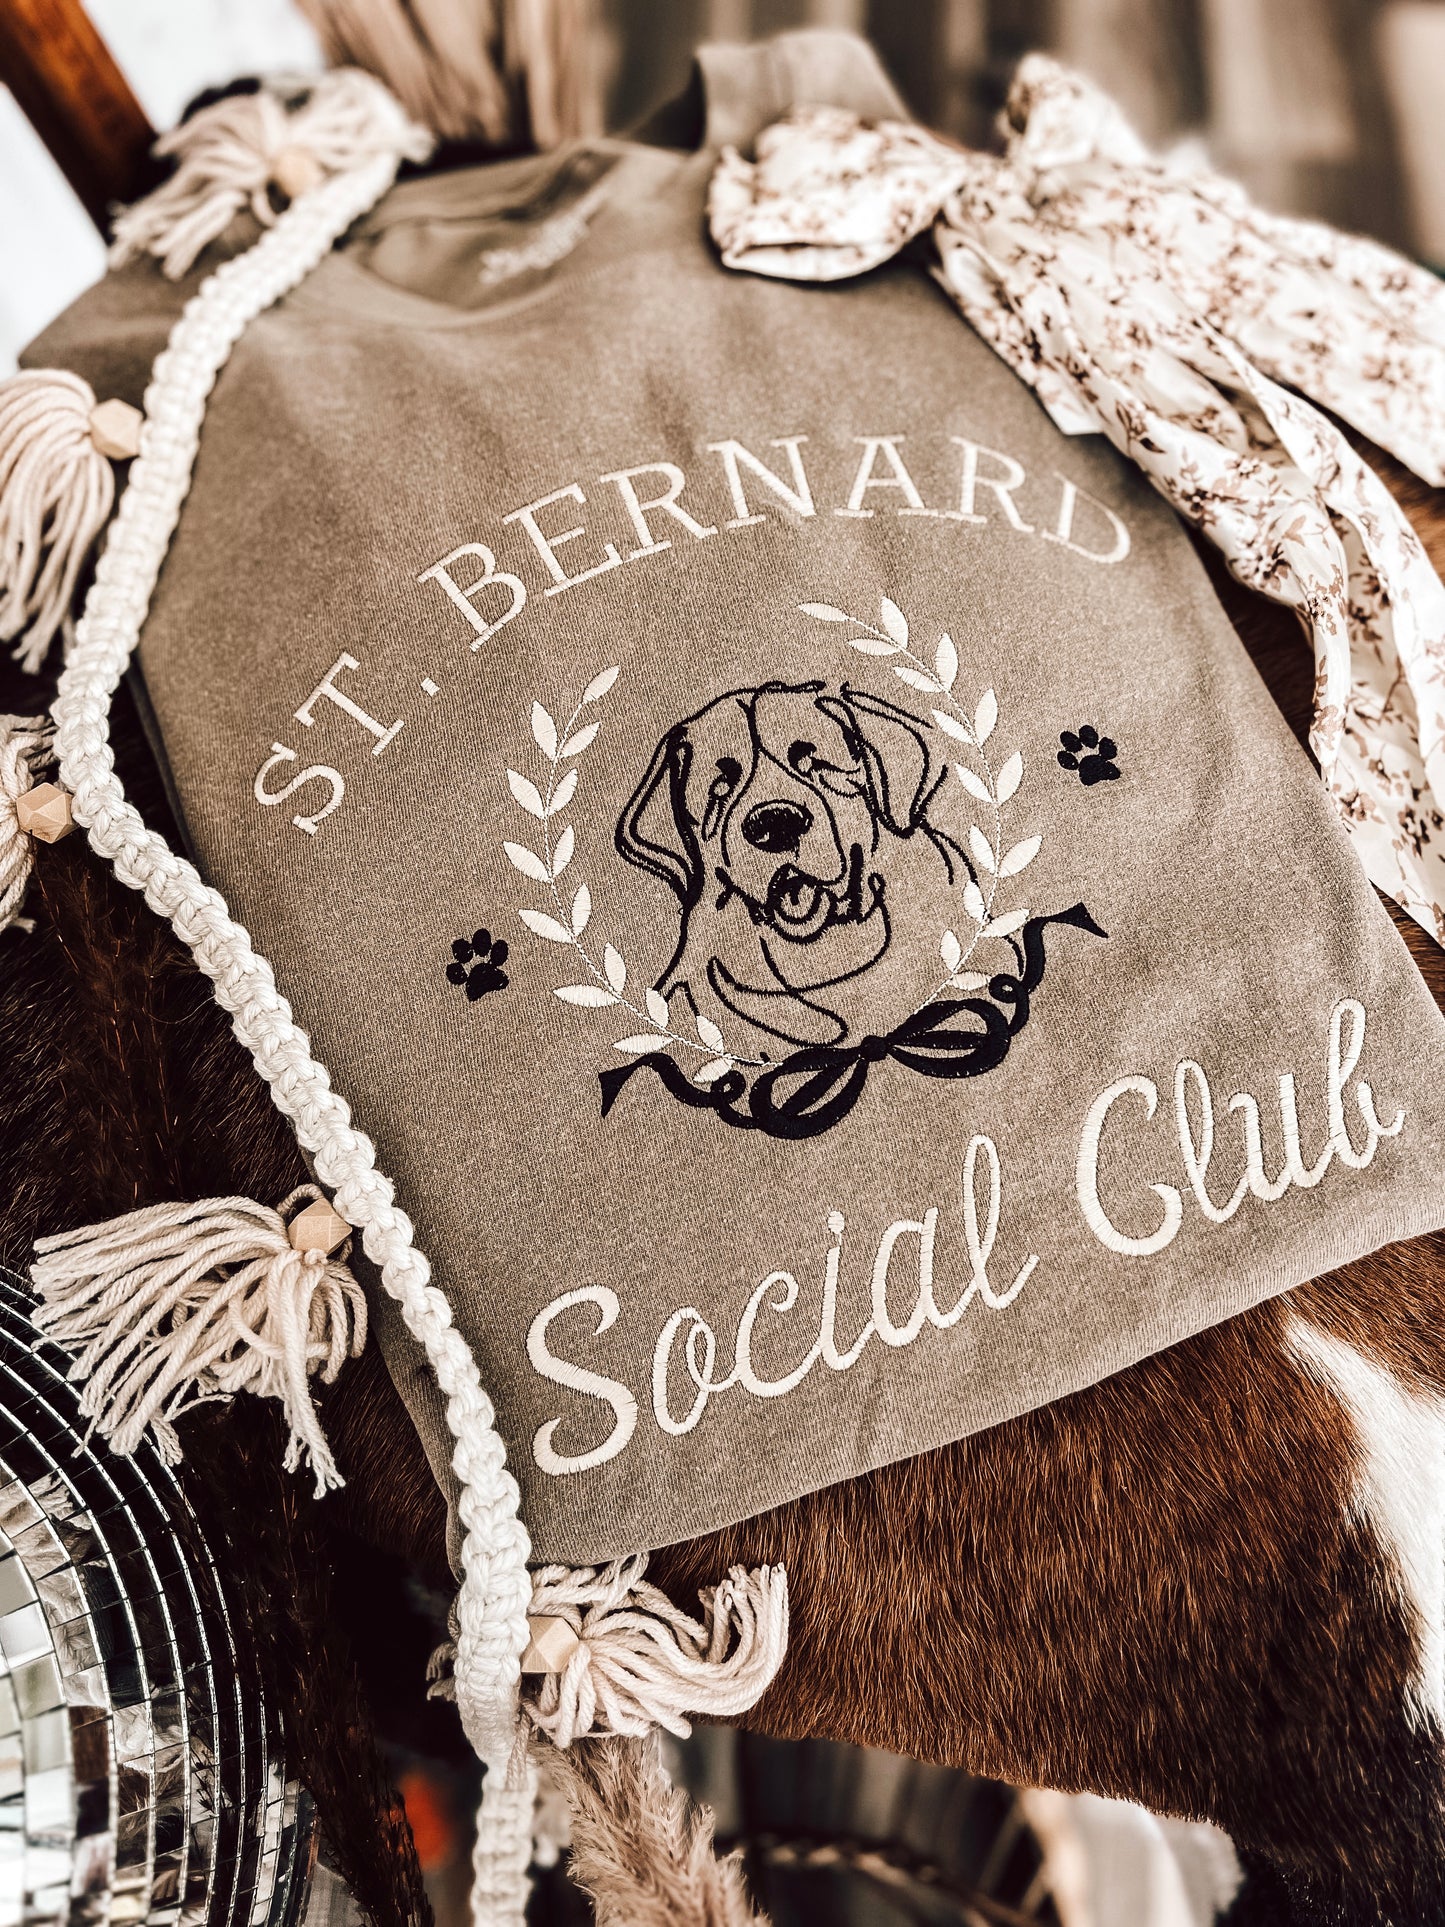 Social Dog Club | Customized|Handmade Tee